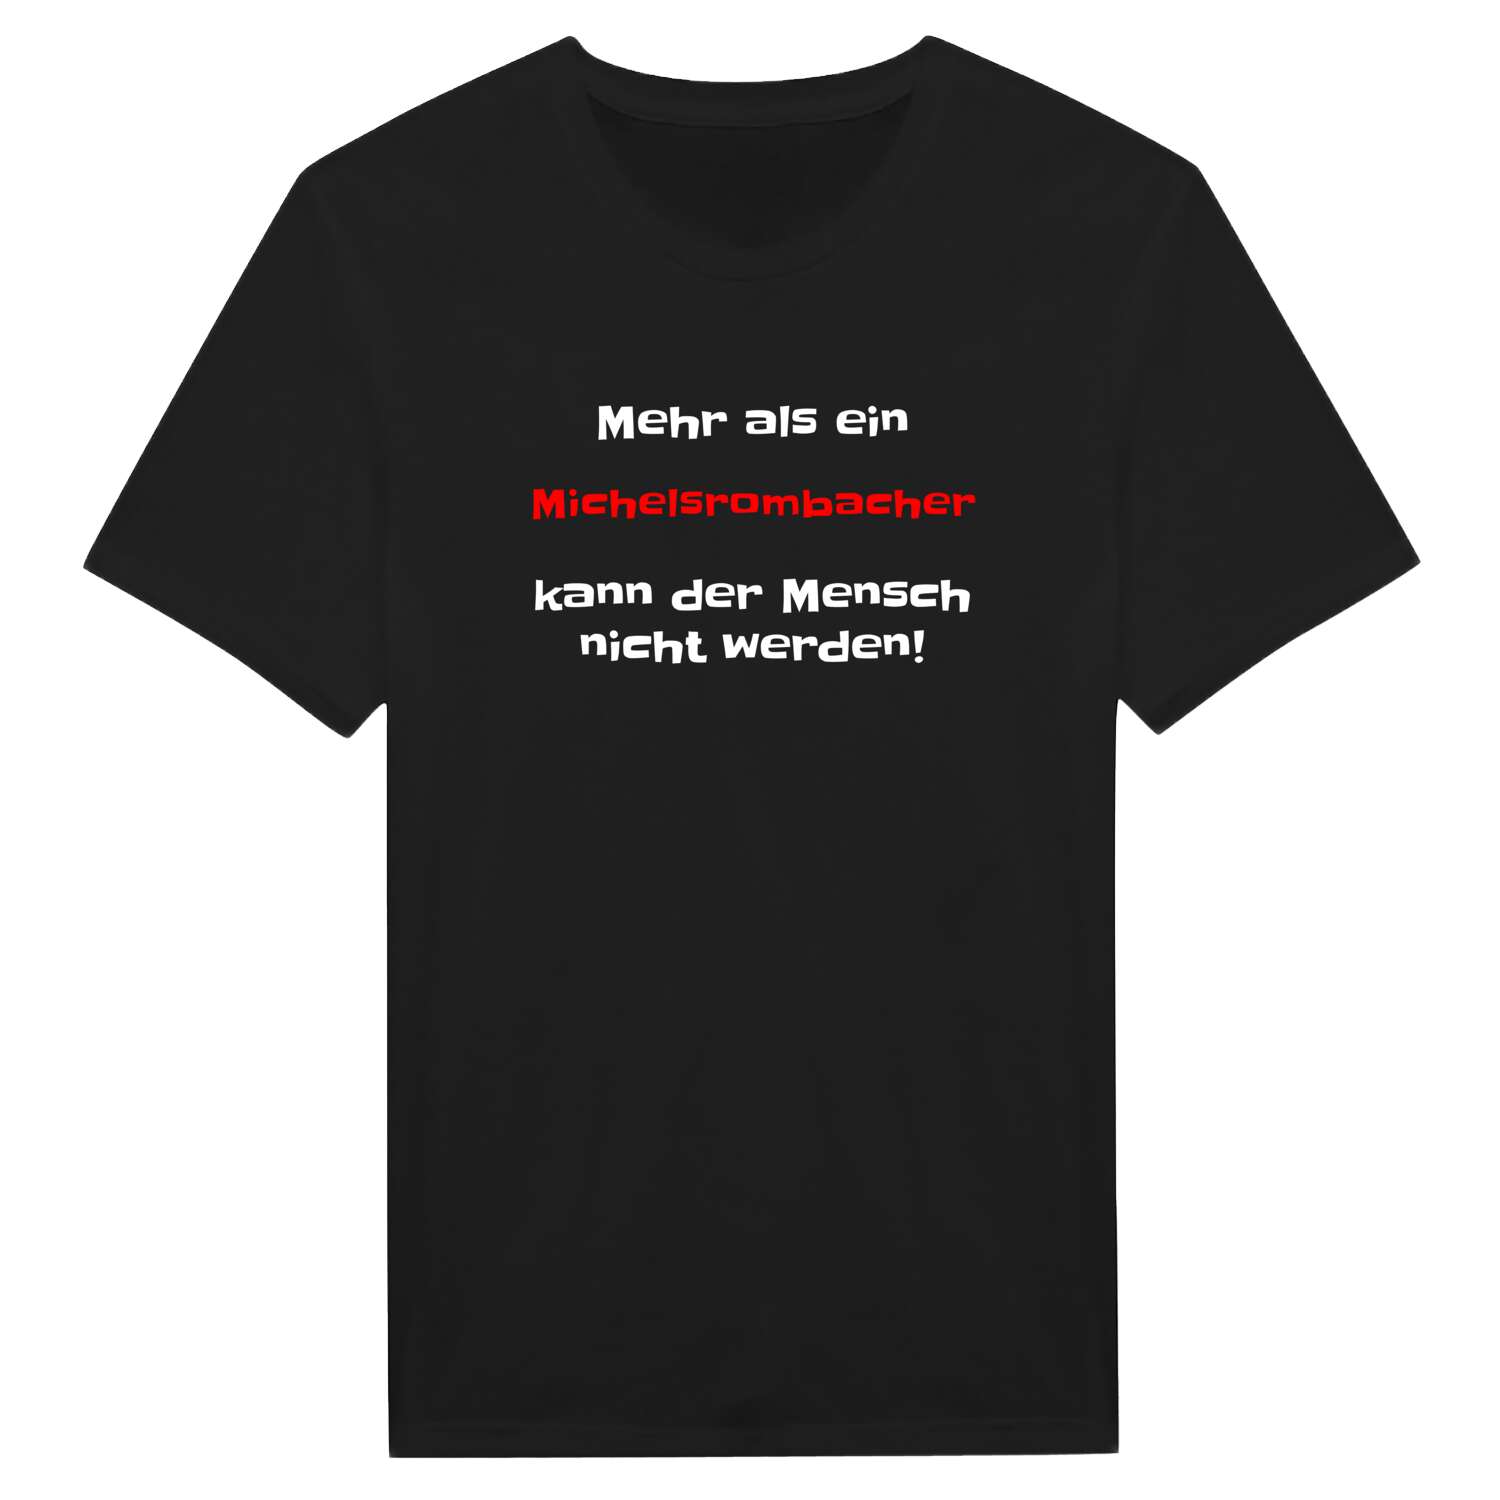 Michelsrombach T-Shirt »Mehr als ein«